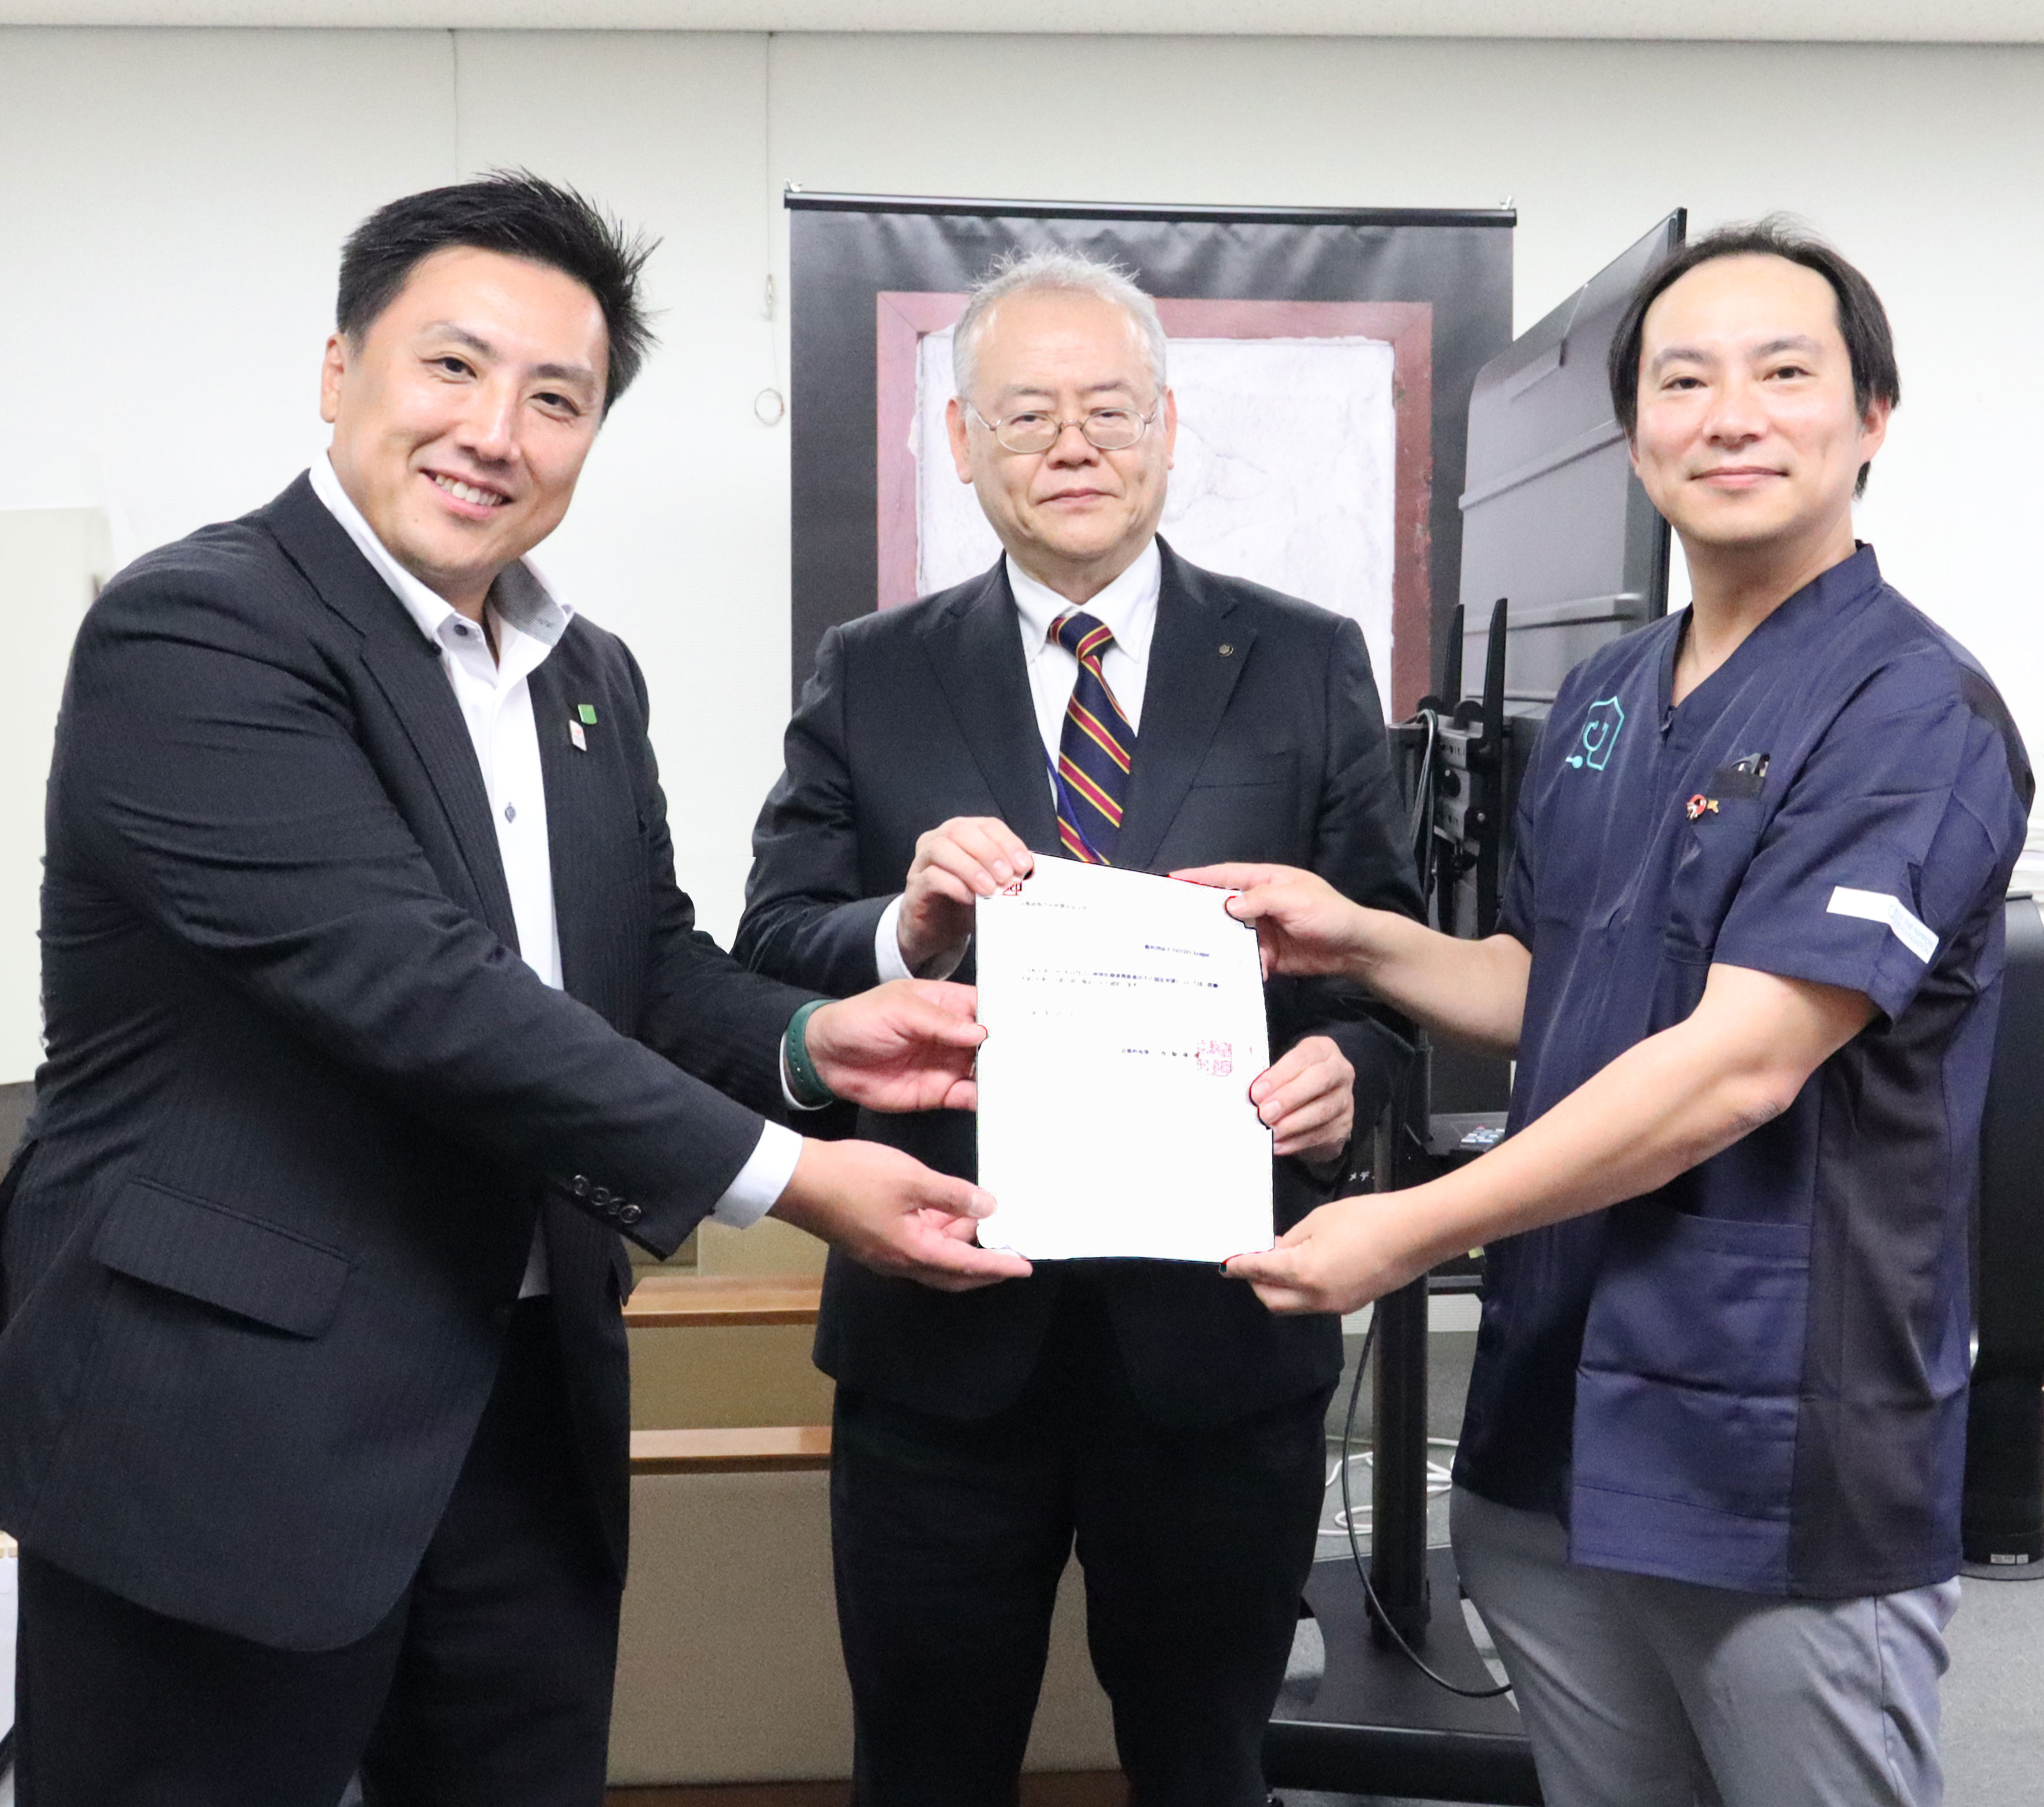 7月1日、京都府初の医療法に基づく「地域医療連携推進法人 Just2Ys League(ジャスティスリーグ)」として京都府知事より認定